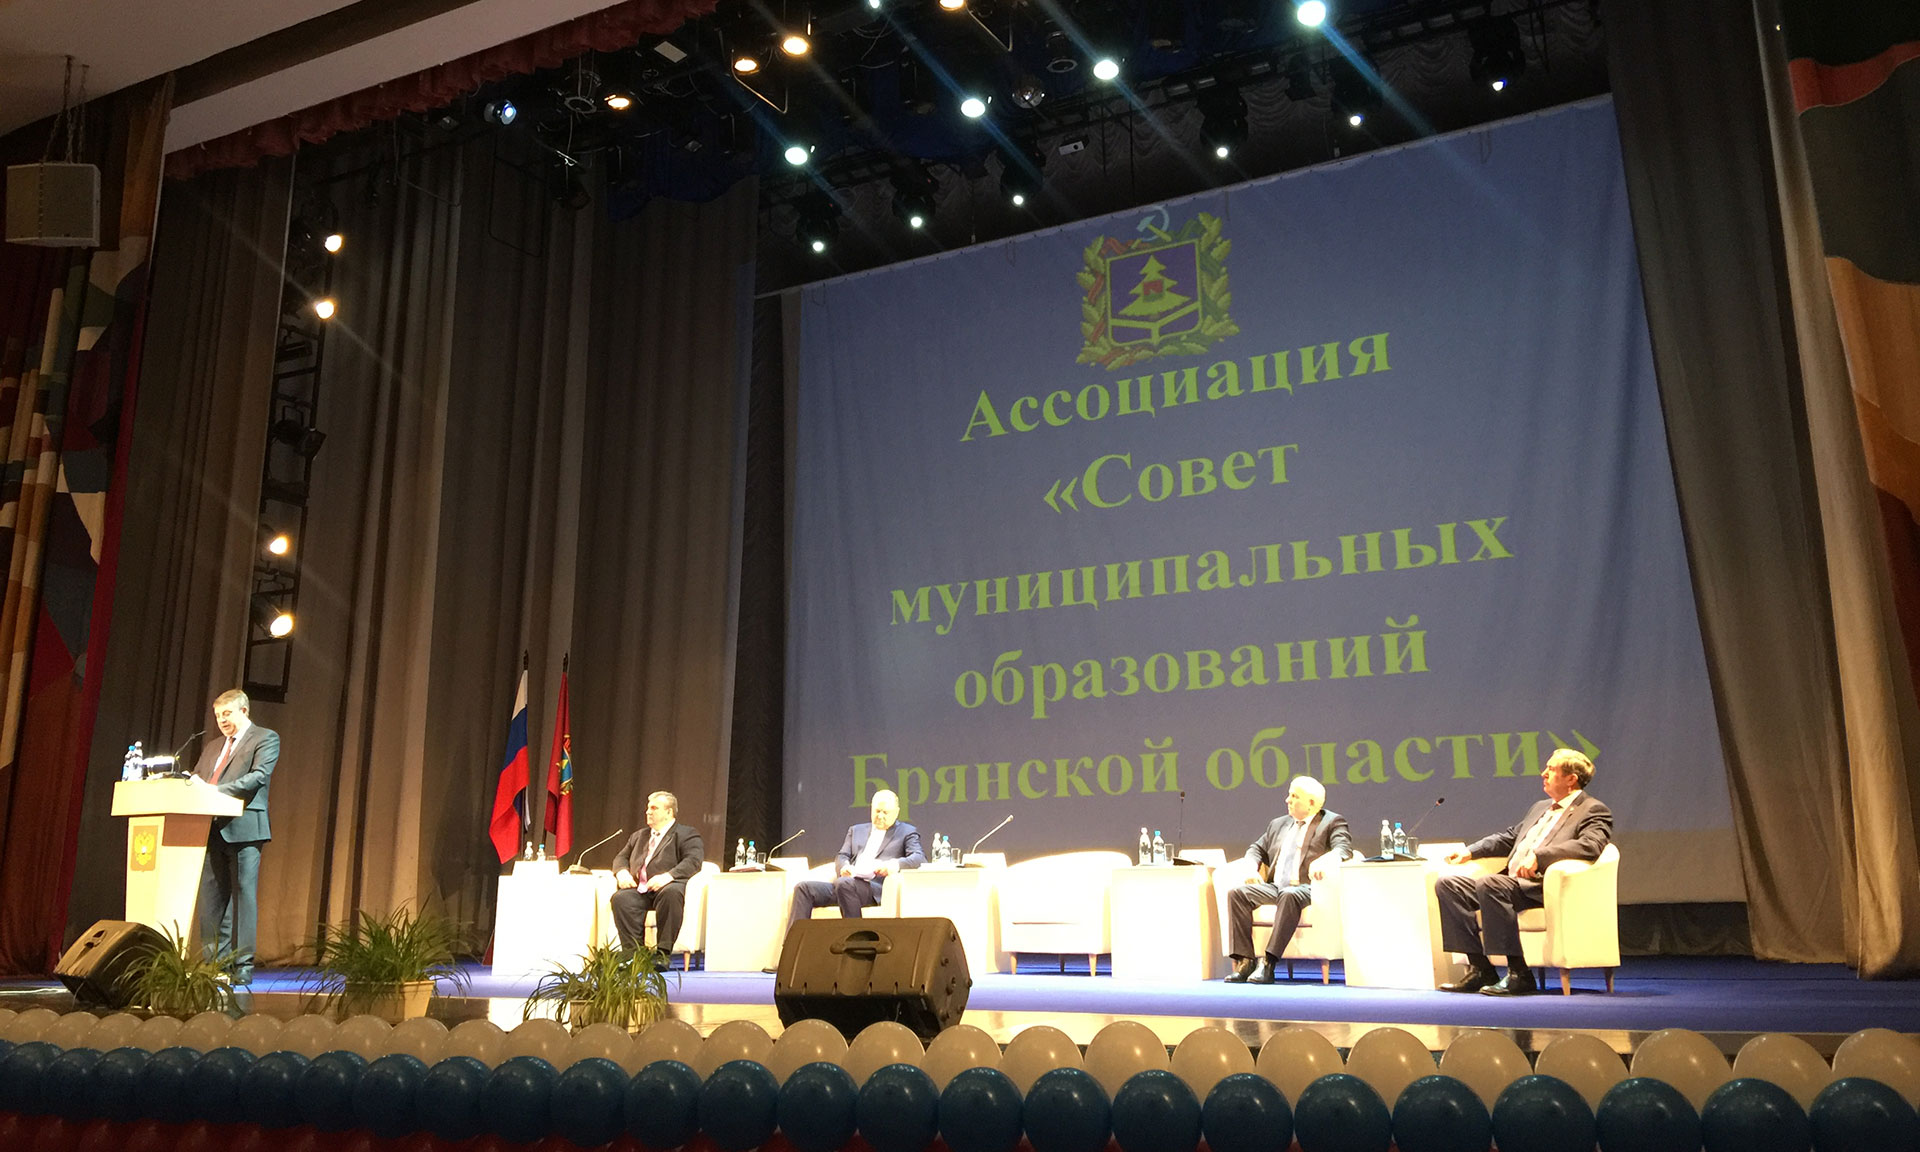 В Брянской области проходит Общее Собрание Ассоциации "Совет муниципальных образований"